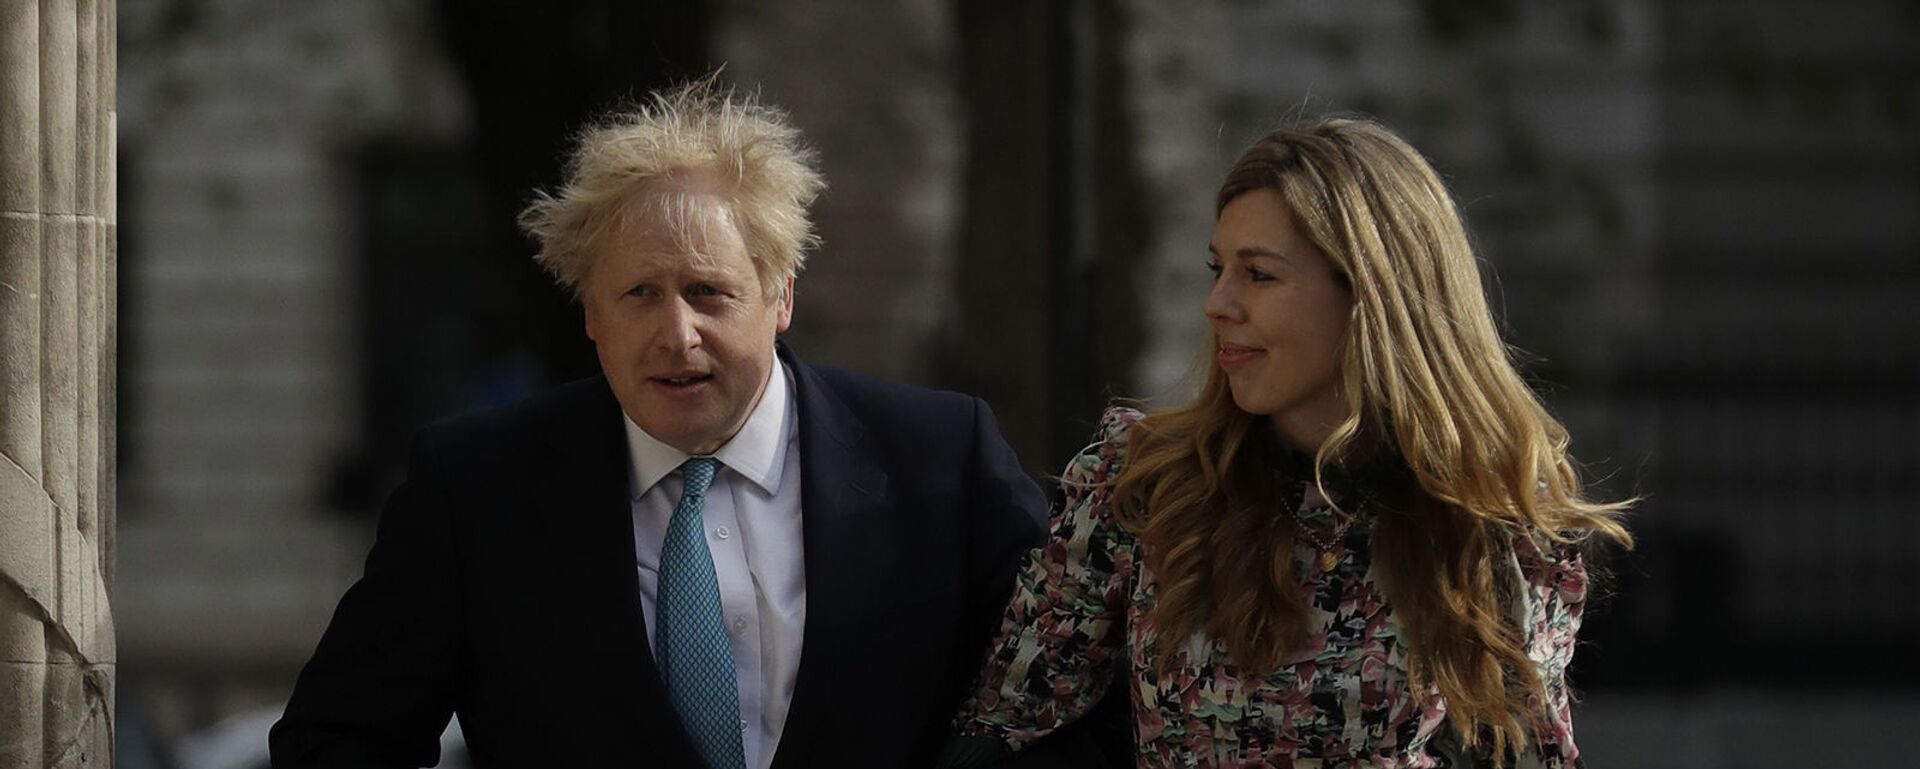 Премьер-министр Великобритании Борис Джонсон и Кэрри Саймондс прибывают на избирательный участок в Вестминстере - Sputnik Արմենիա, 1920, 30.05.2021